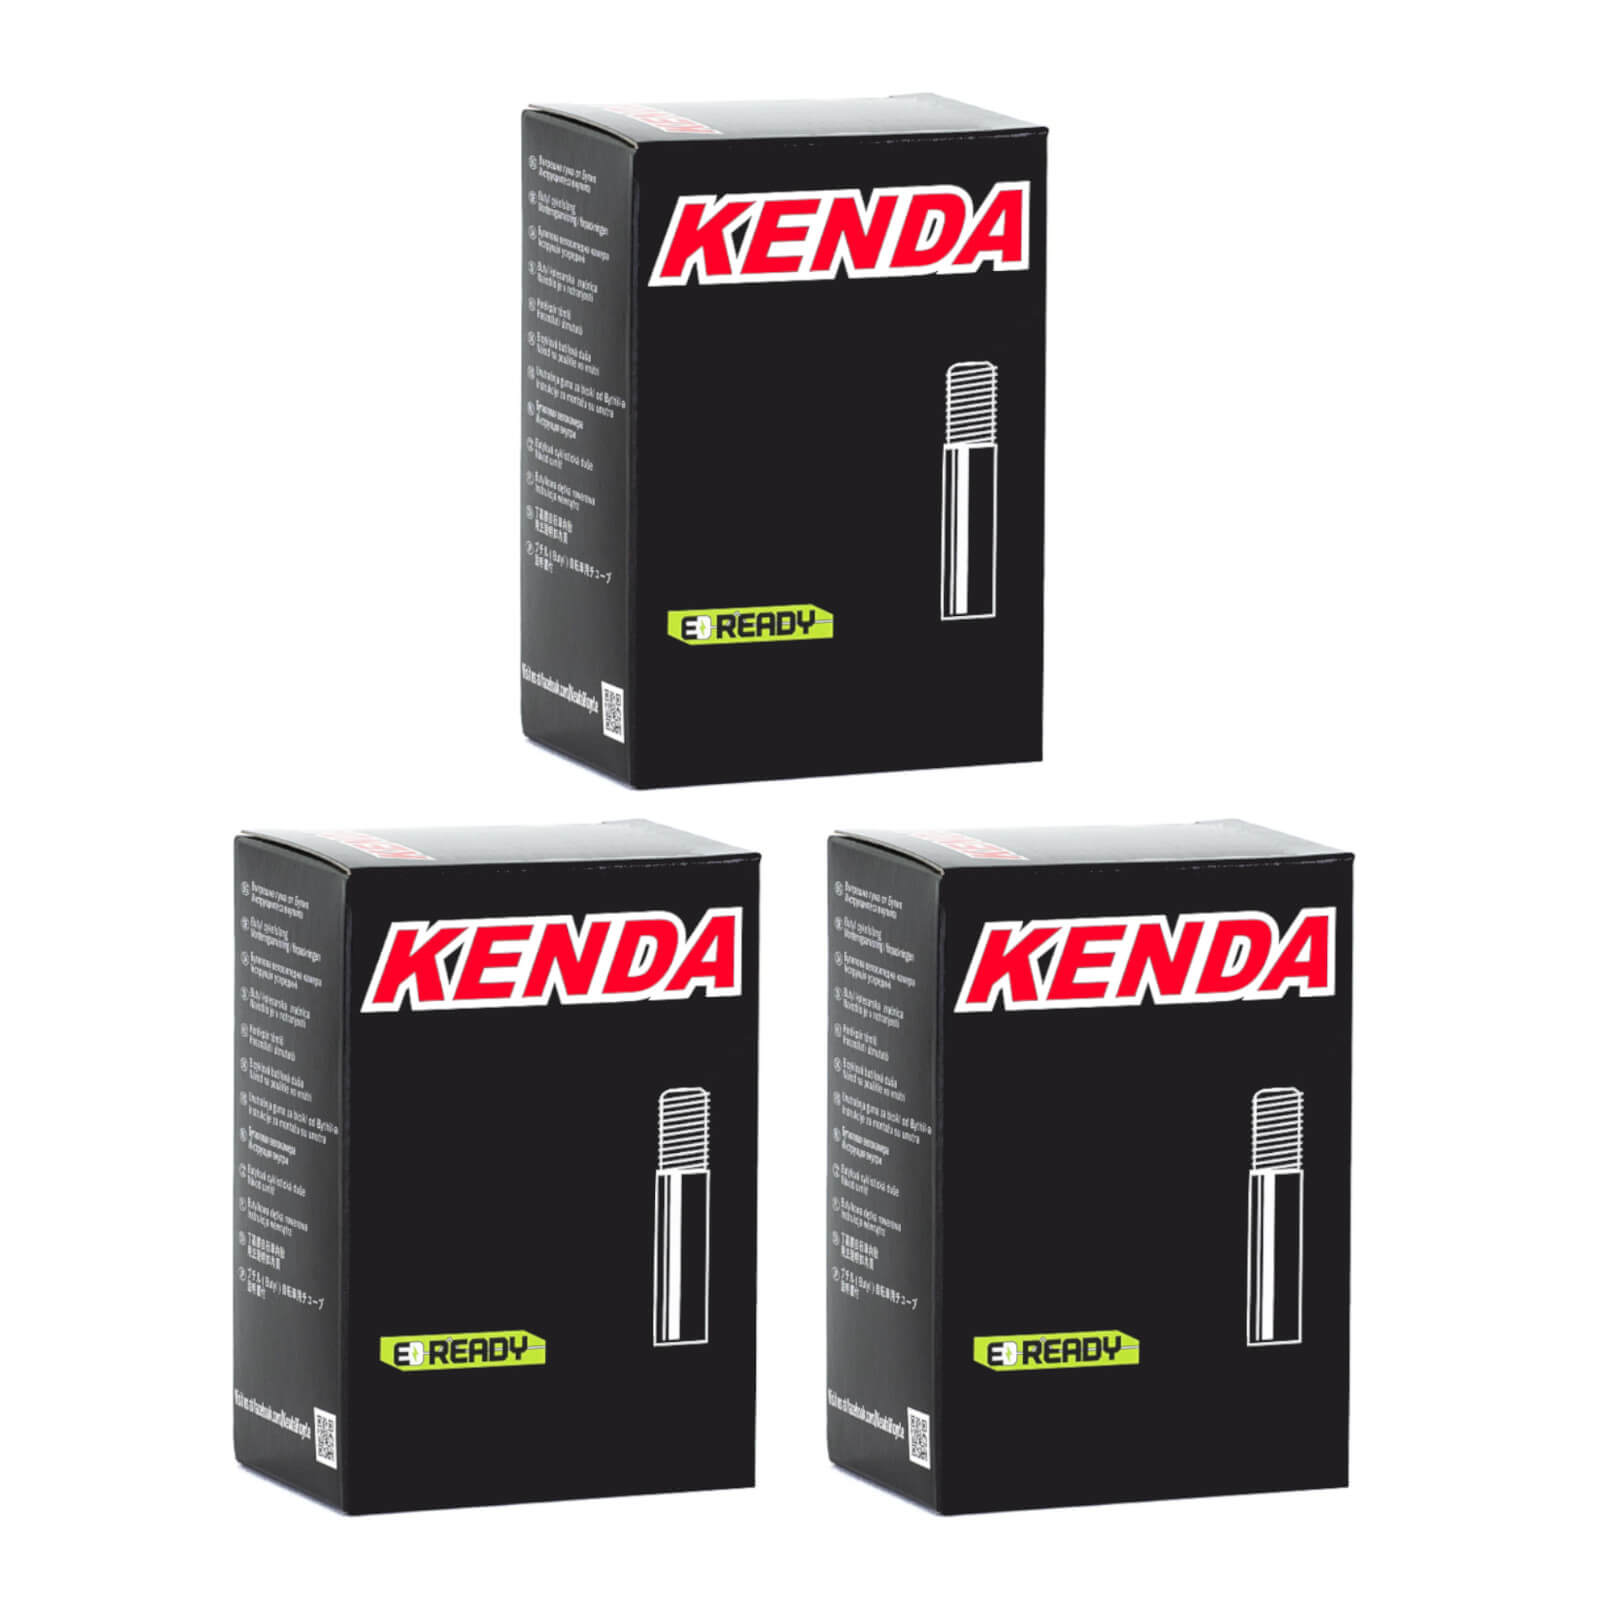 Kenda 26x2.4-2.8" 26 Inch Schrader Valve Bike Inner Tube Pack of 3